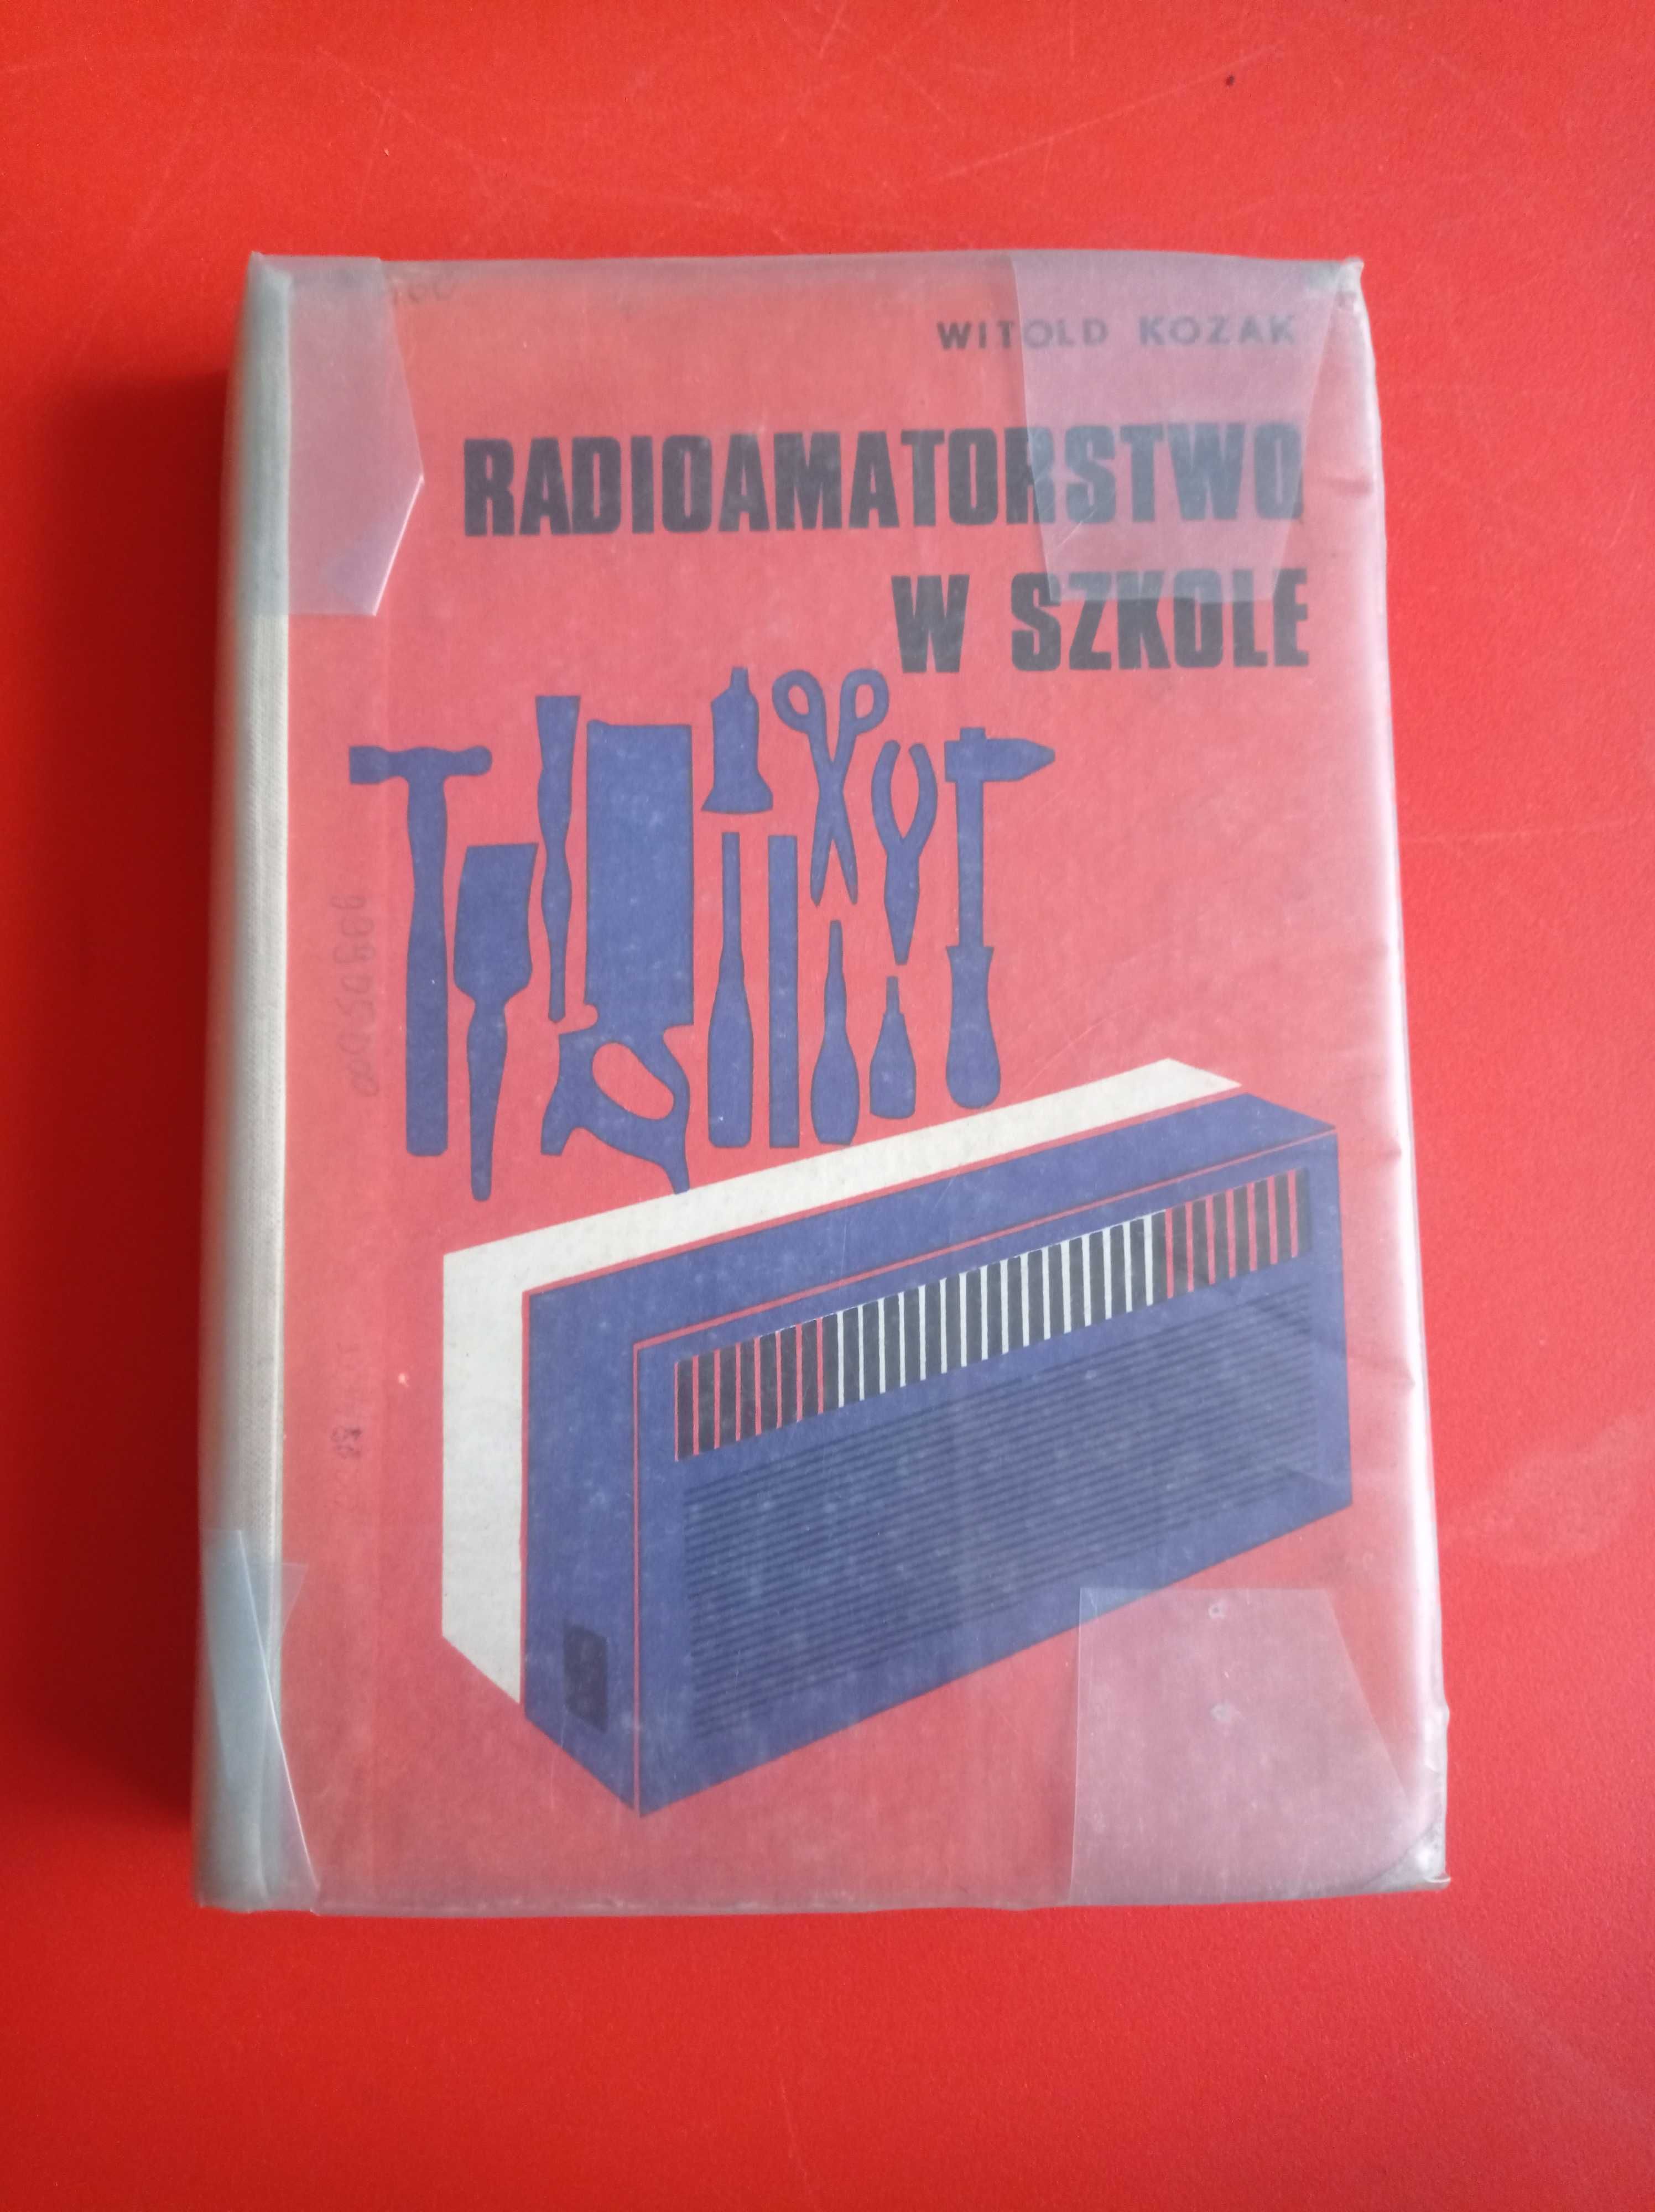 Radioamatorstwo w szkole, Witold Kozak